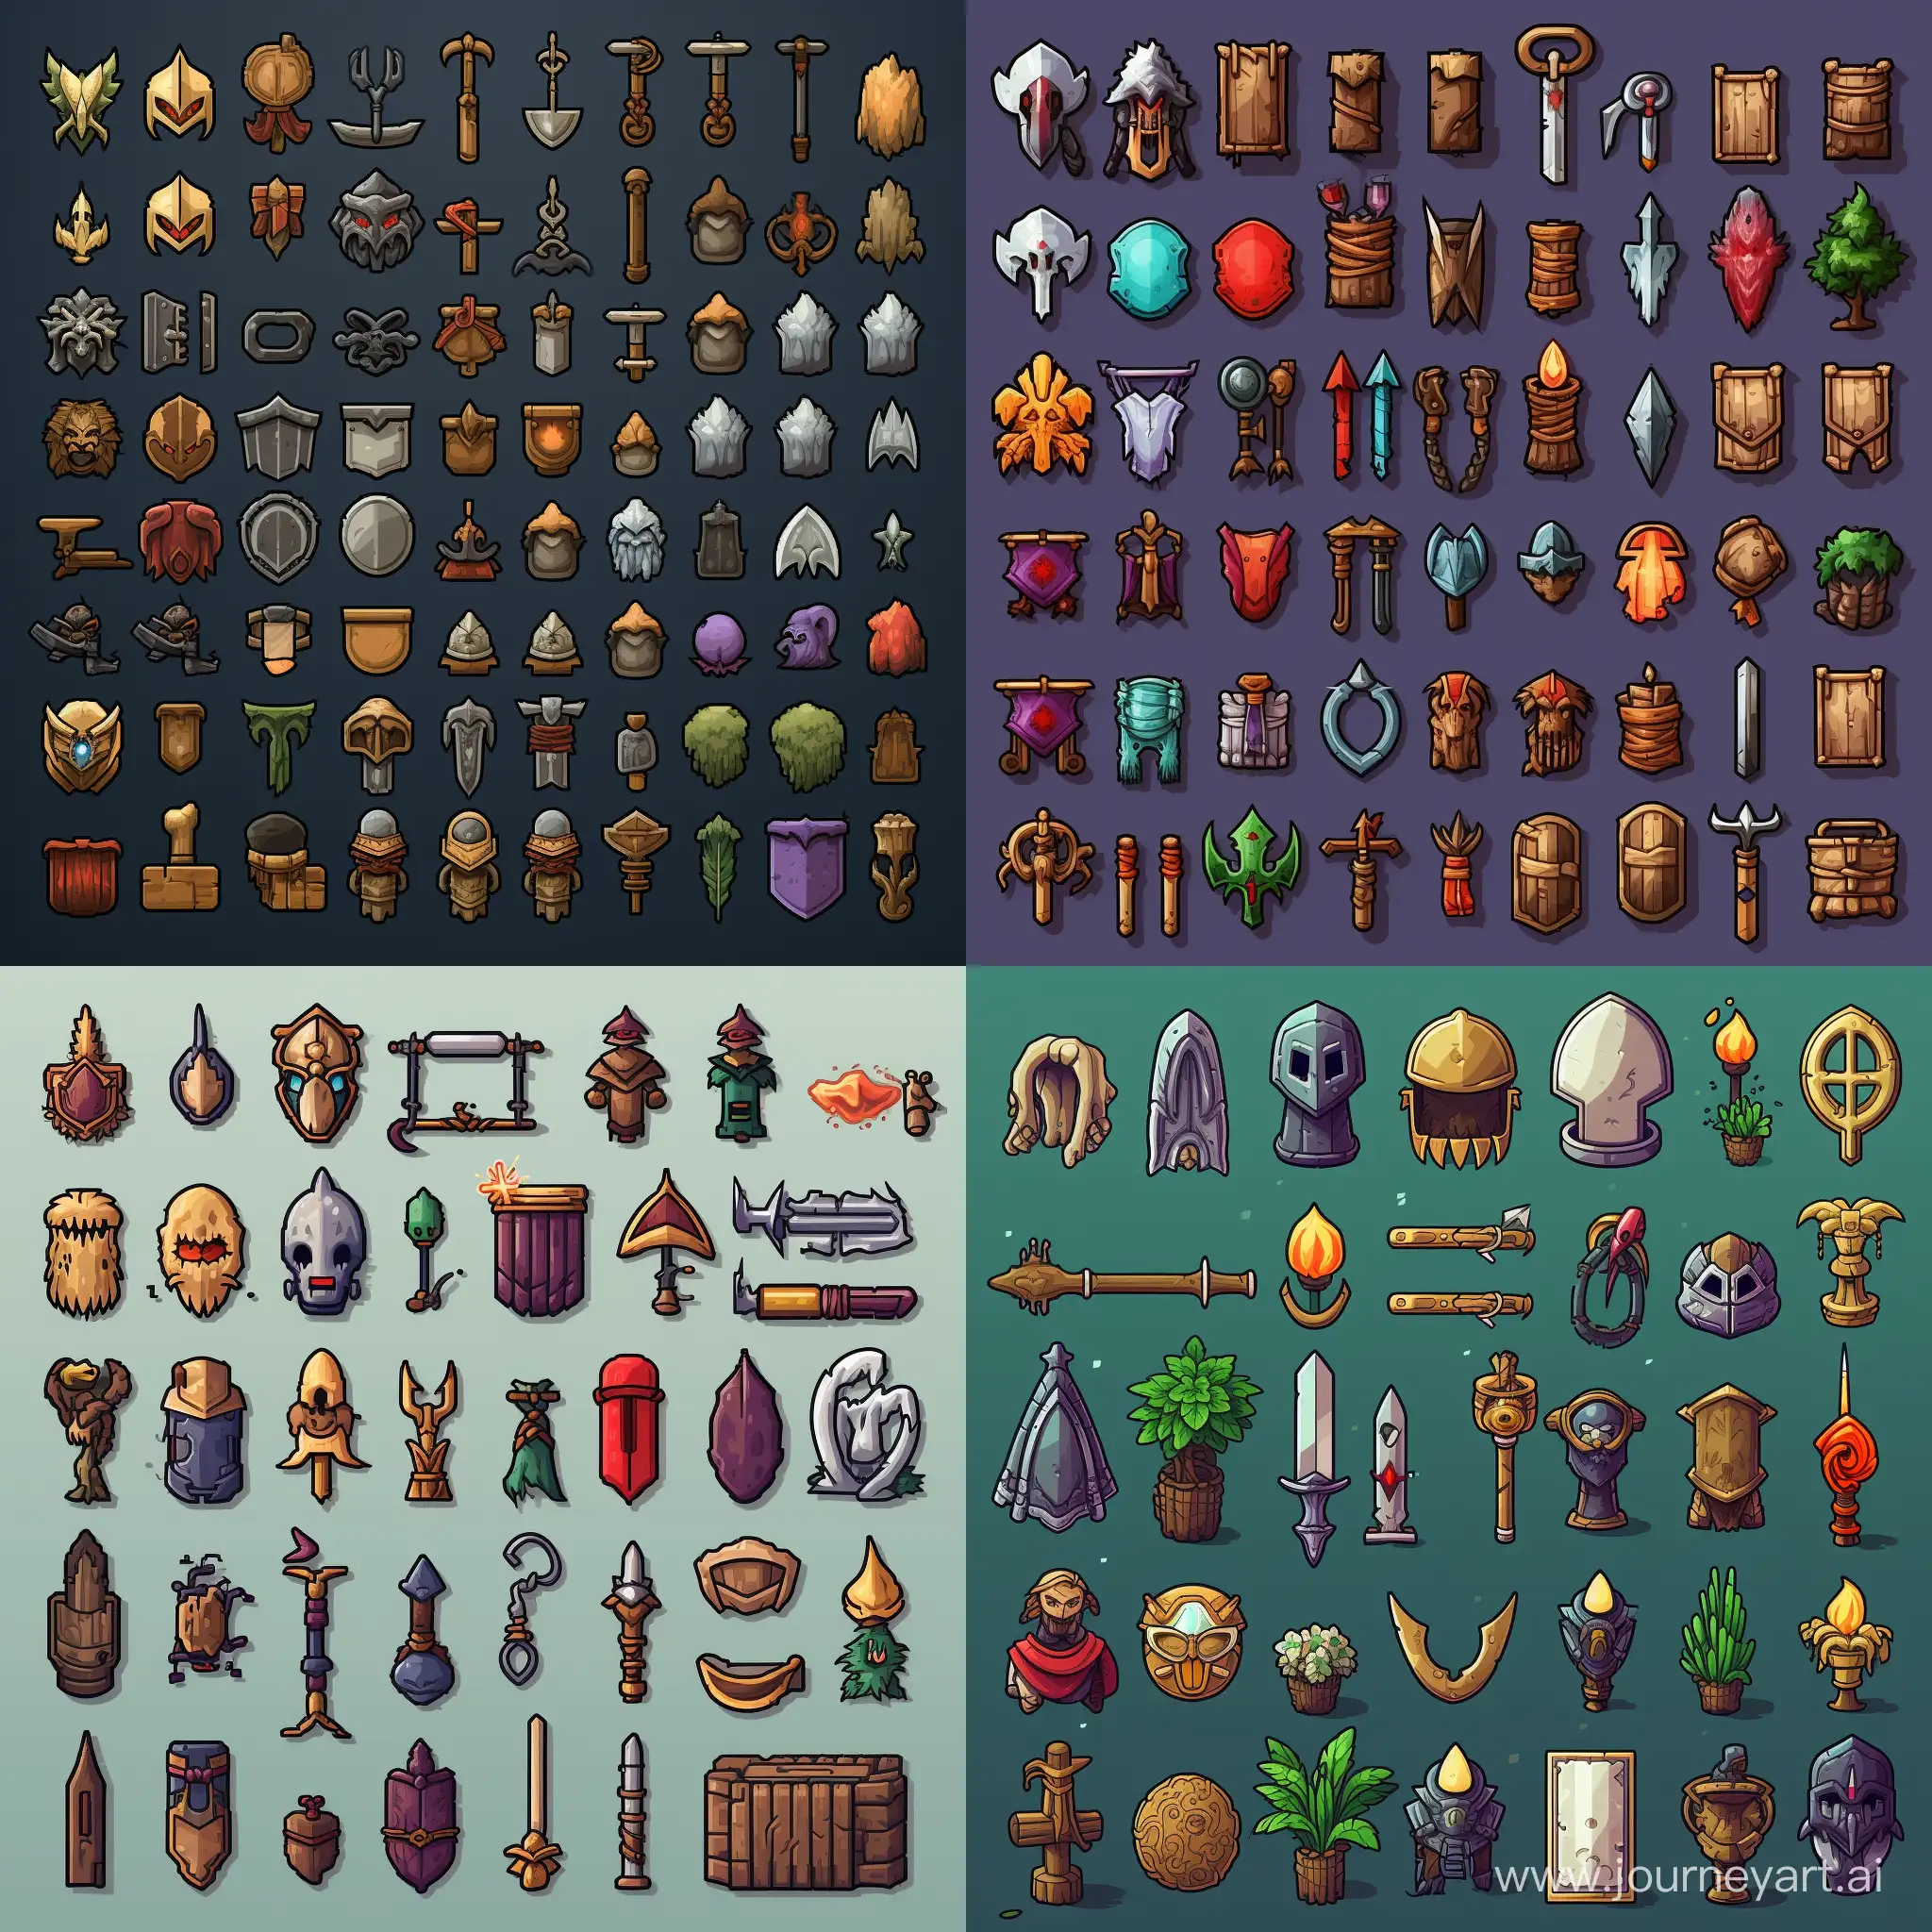 Pixel-Art-RPG-Icons-Diverse-Item-Spritesheet-2431-Icons